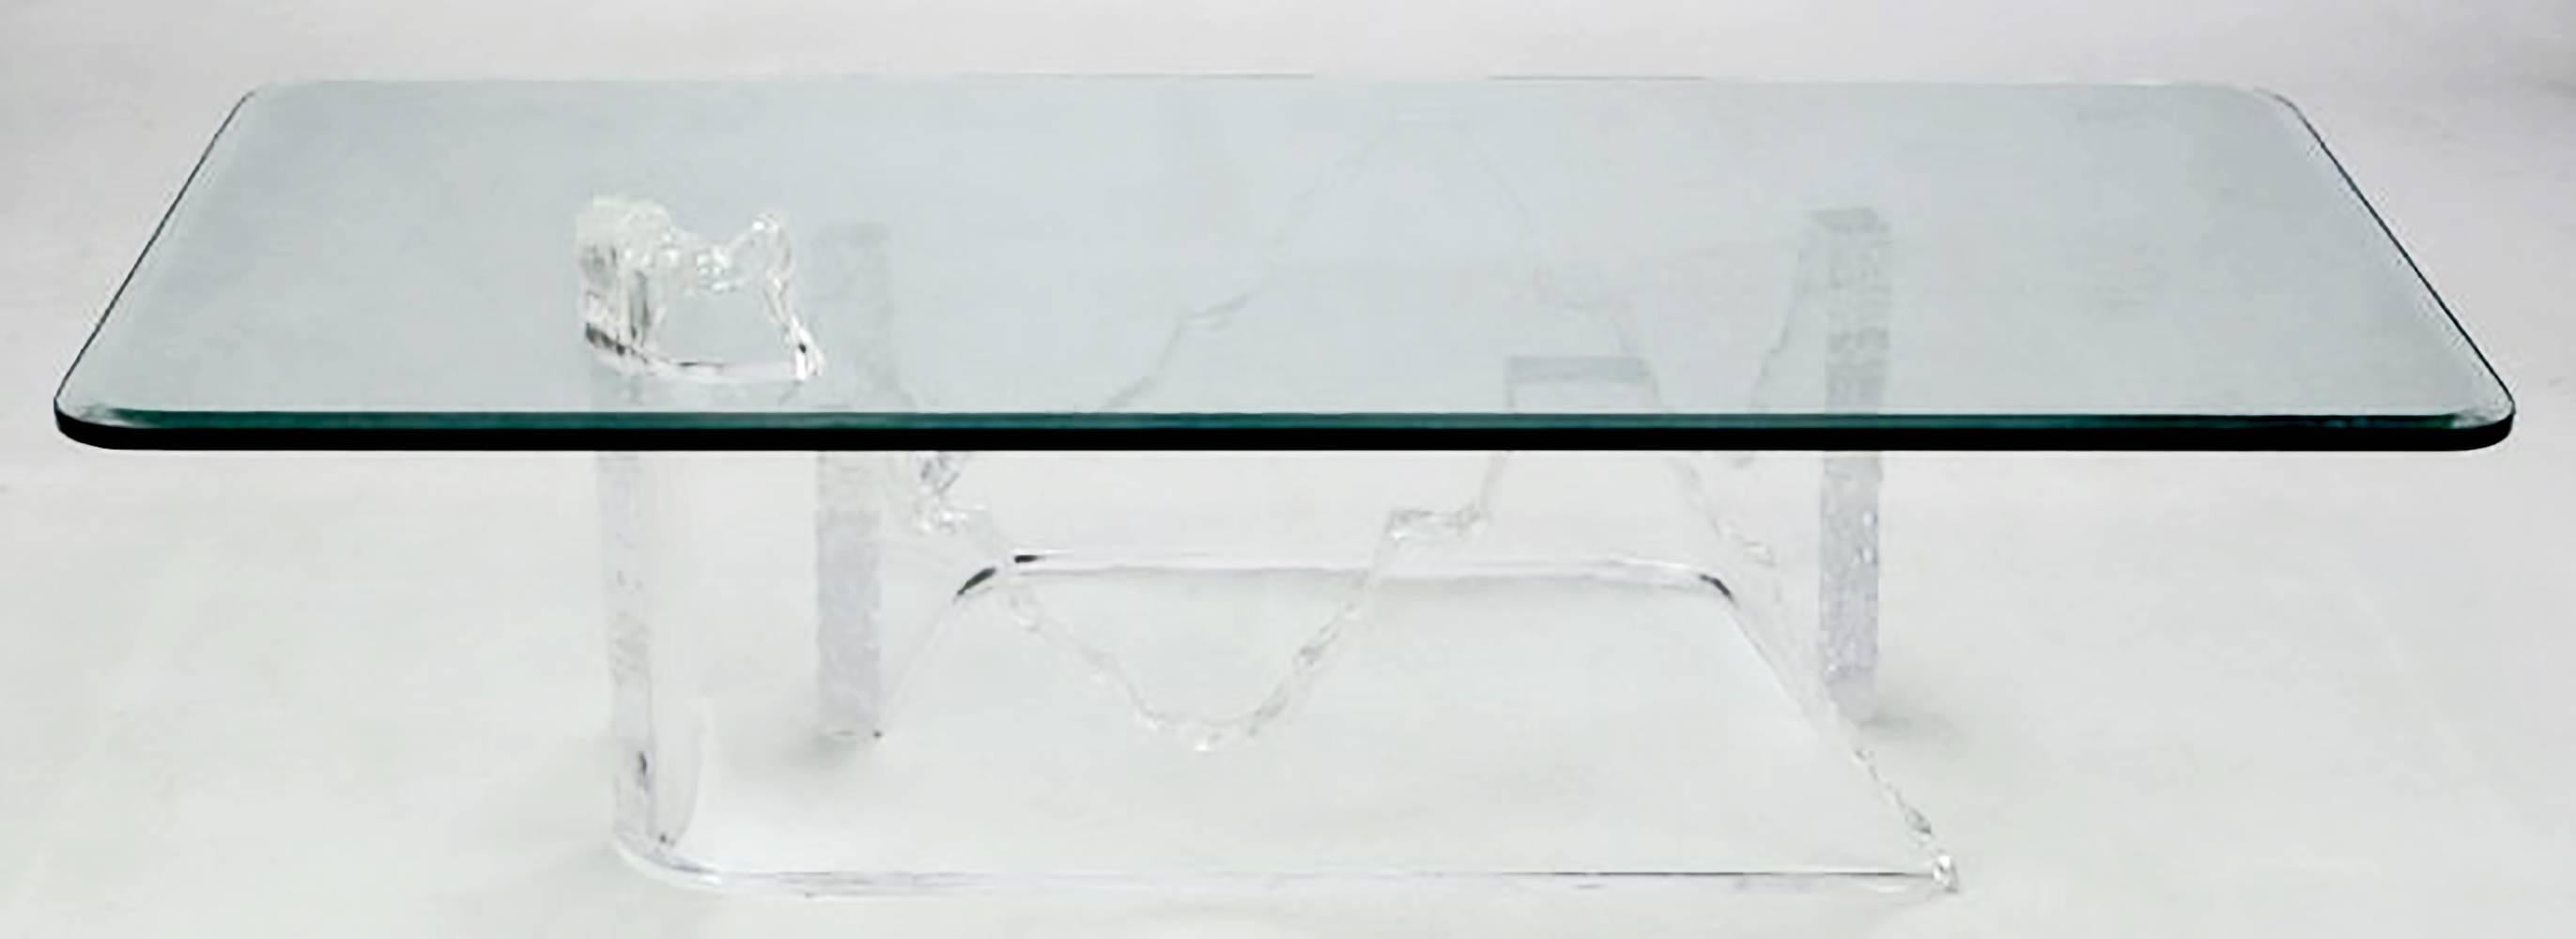 Table basse inhabituelle en Lucite et verre en forme d'iceberg ou de glacier en fusion. Attribuée au lion en givre, la base est constituée de deux pièces épaisses en Lucite, sculptées et pliées, dont une section semble percer le sommet. Il s'agit en